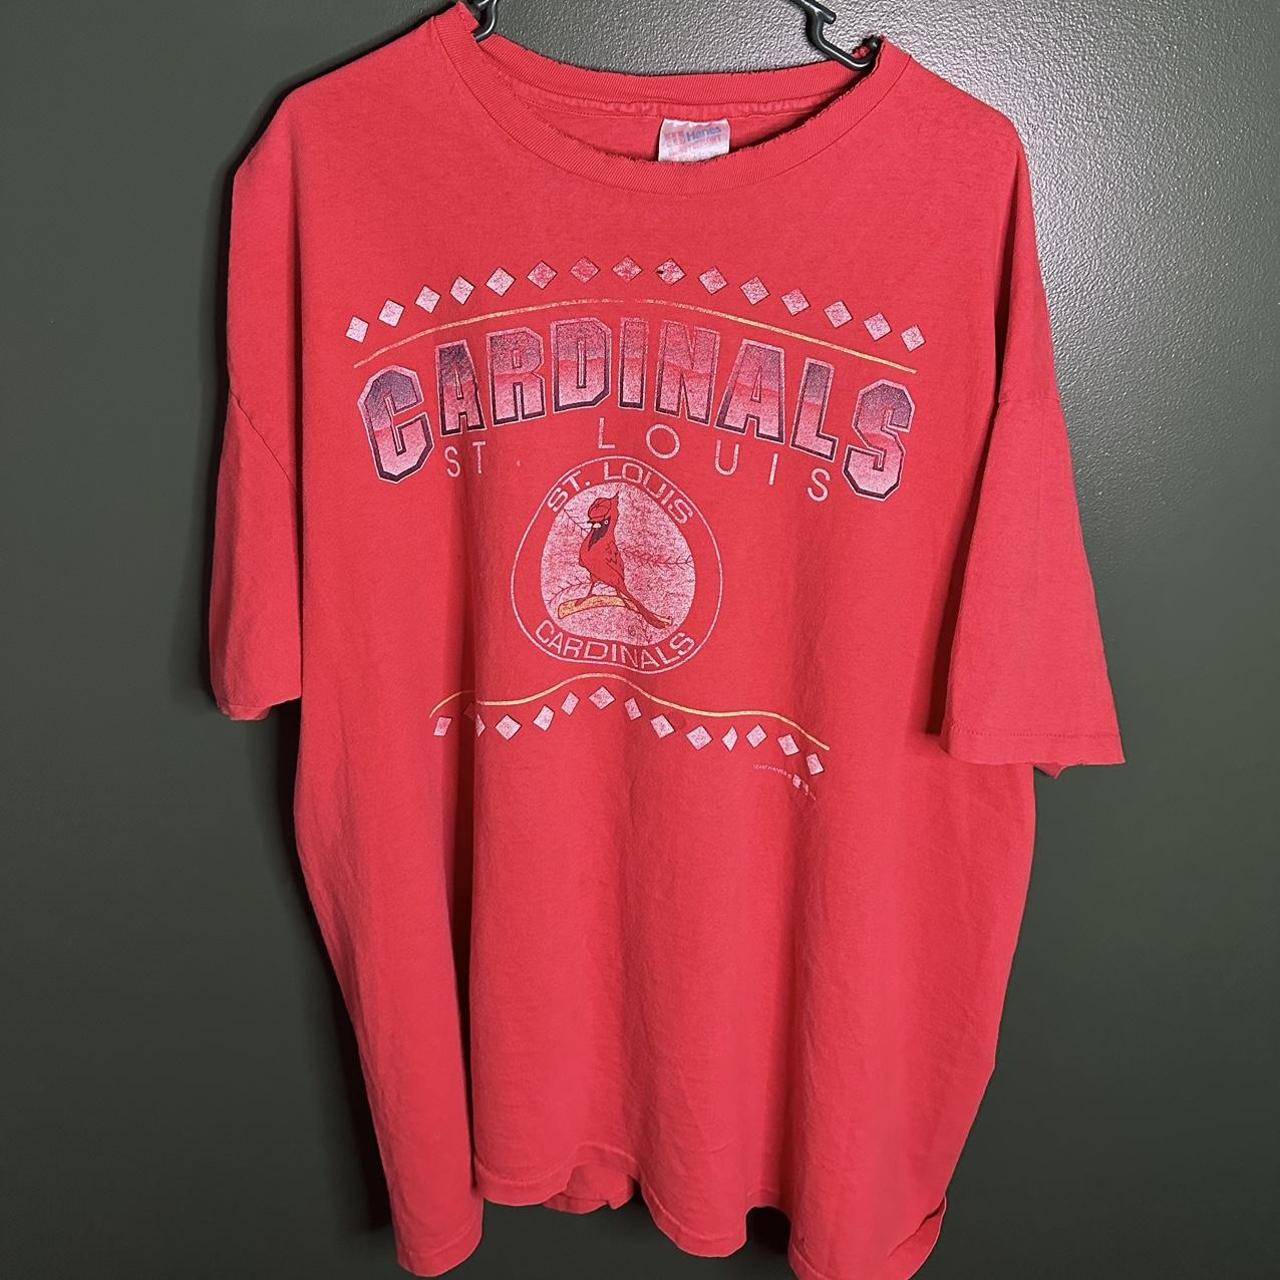 Vintage St. Louis Cardinals Shirt. NWOT!! Dope - Depop